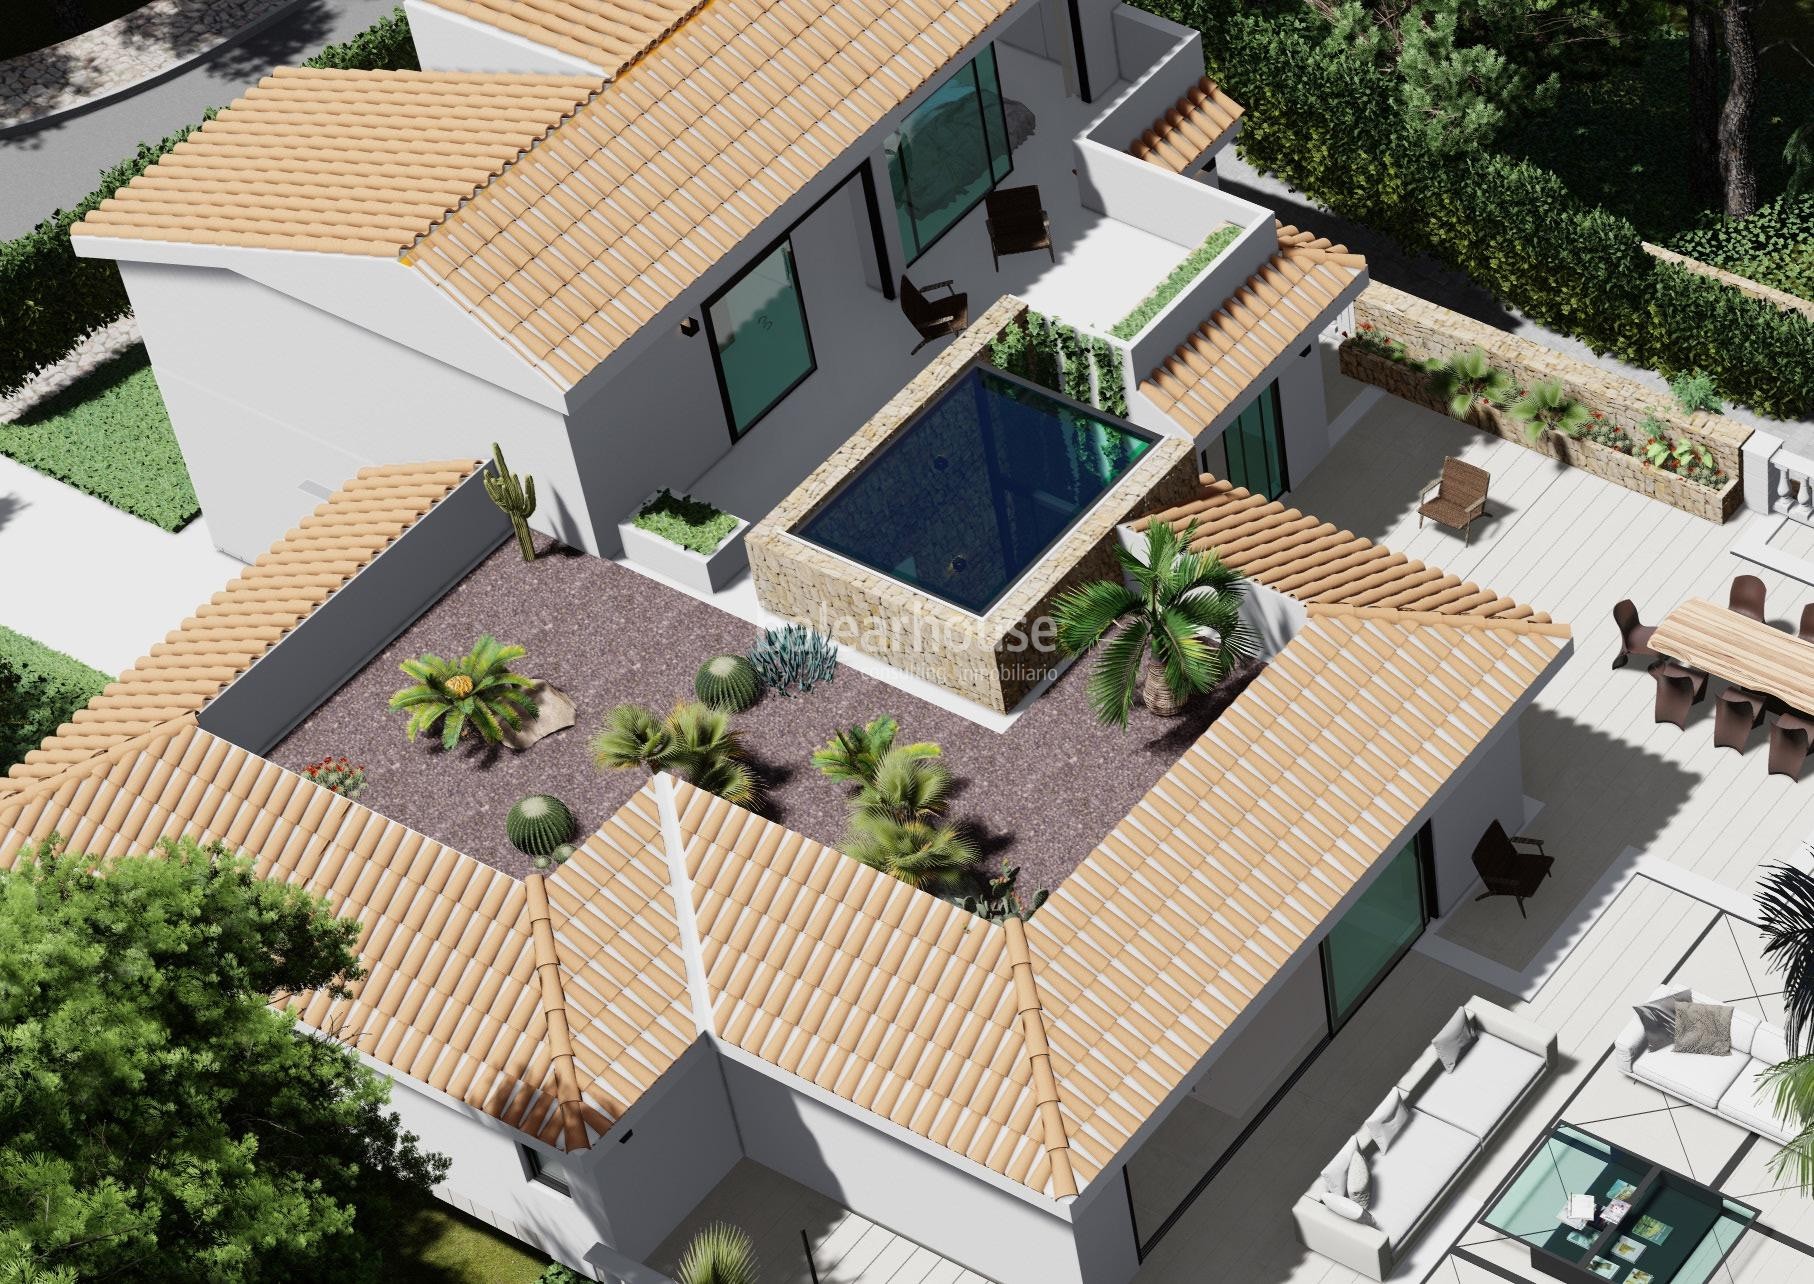 Excelente terreno con casa y proyecto de villa de diseño en la zona costera de Costa d’en Blanes